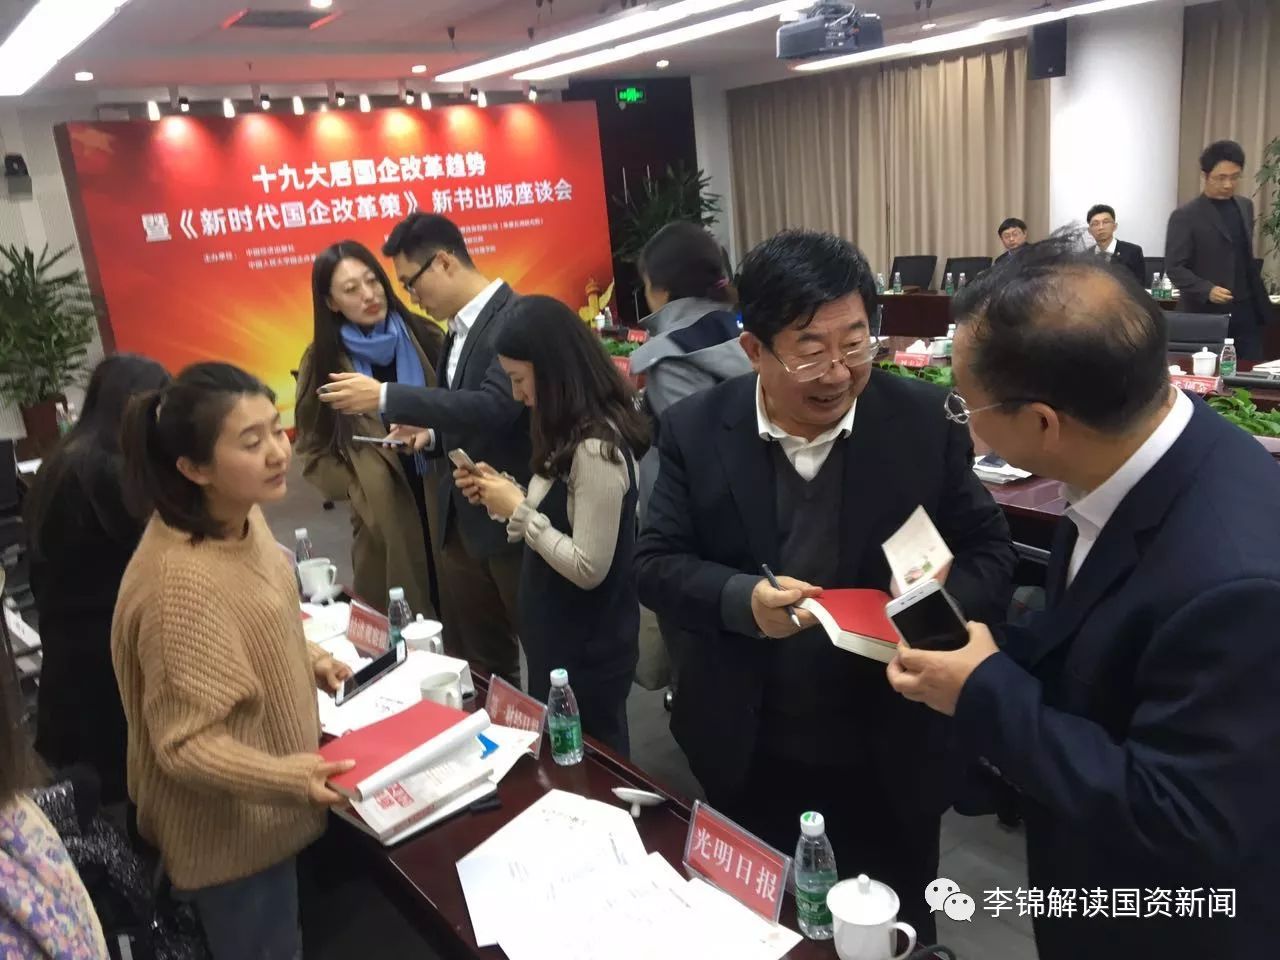 《新时代国企改革策》出版座谈会在京举行